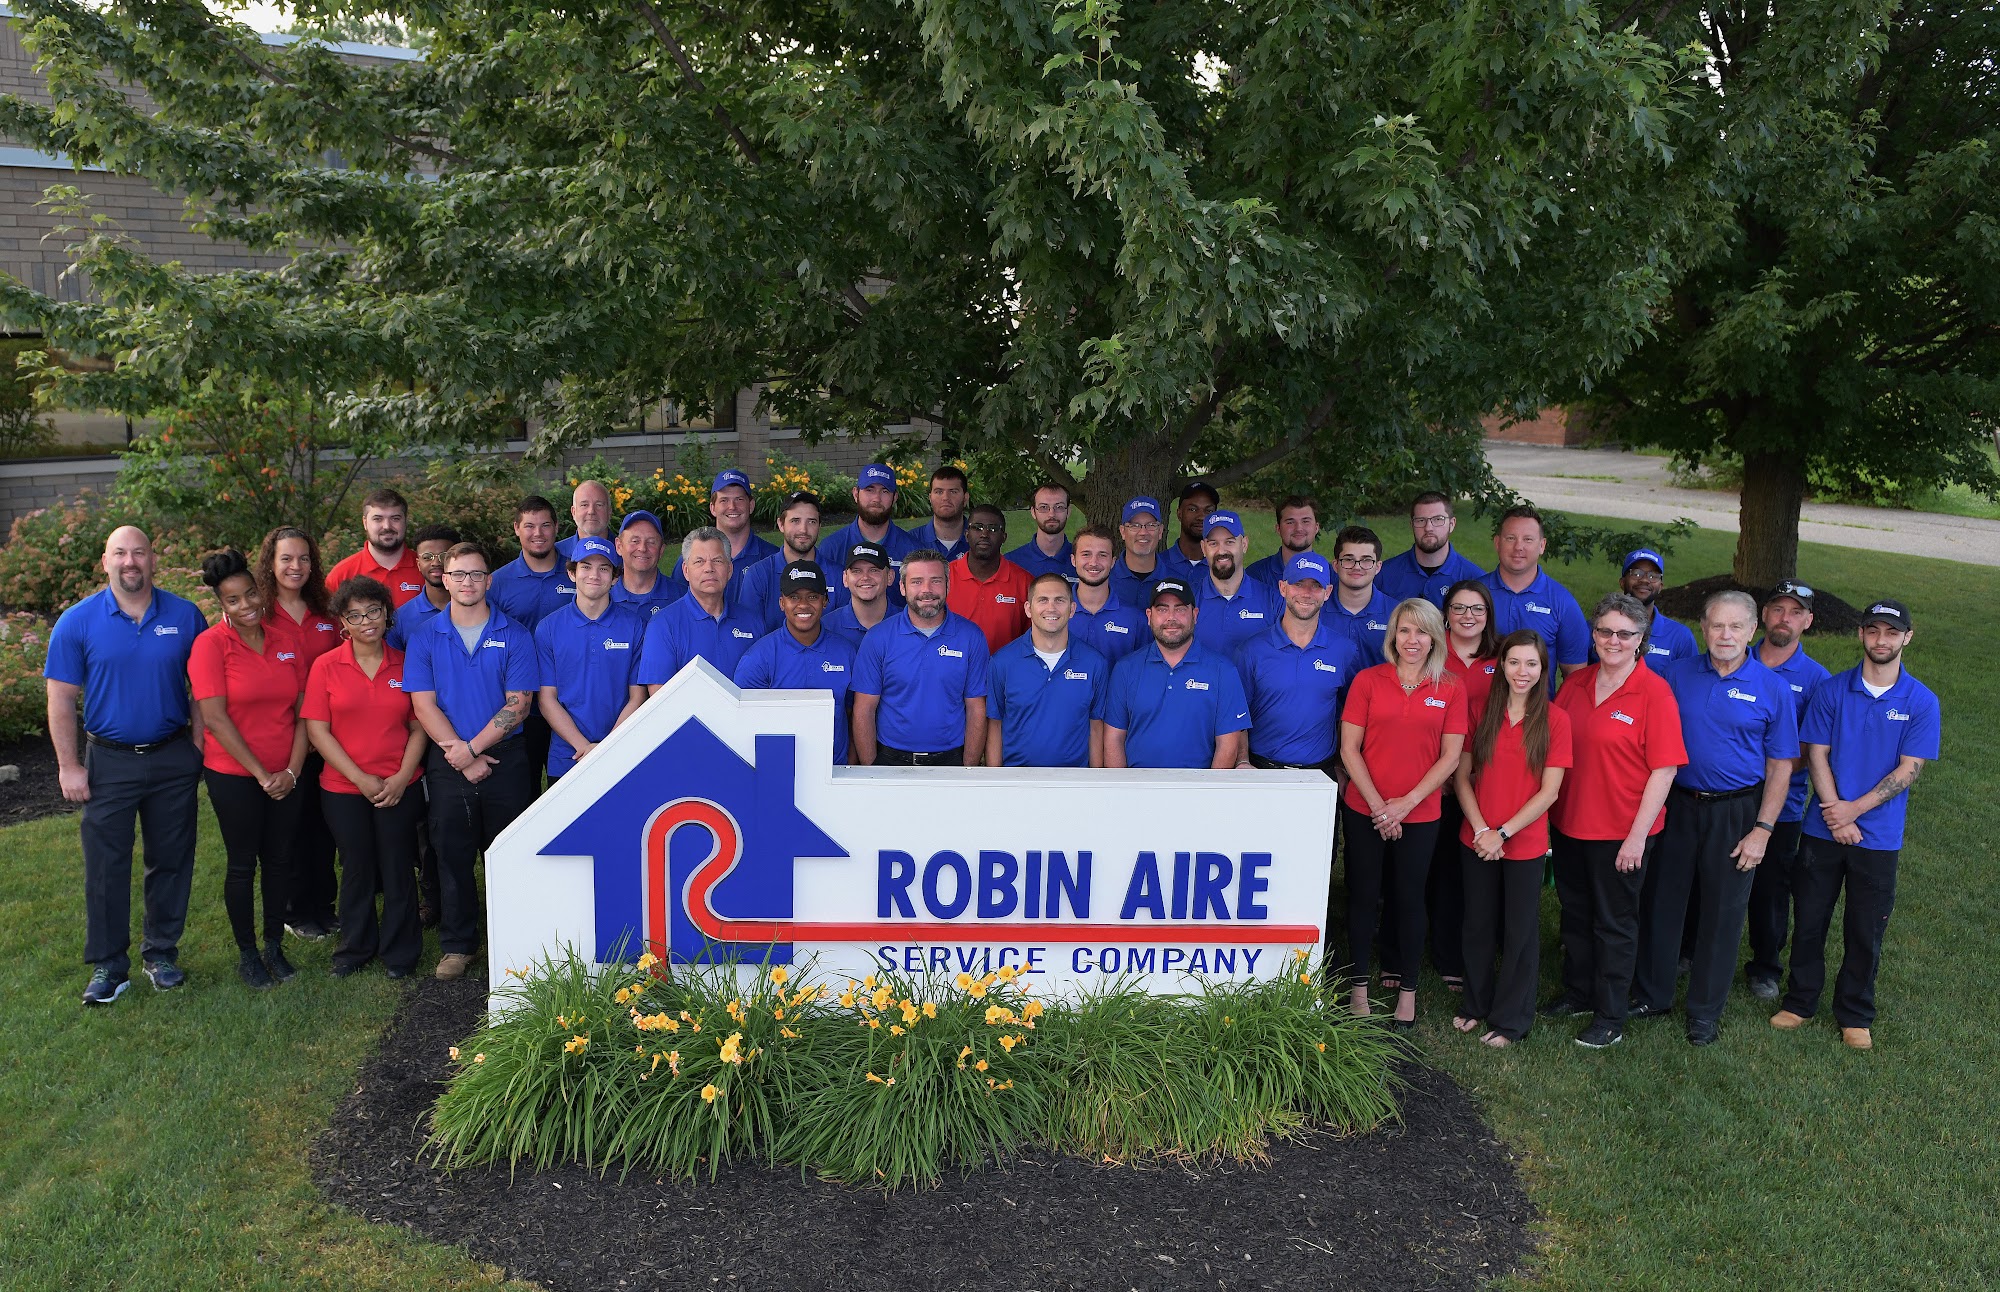 Robin Aire Service Company